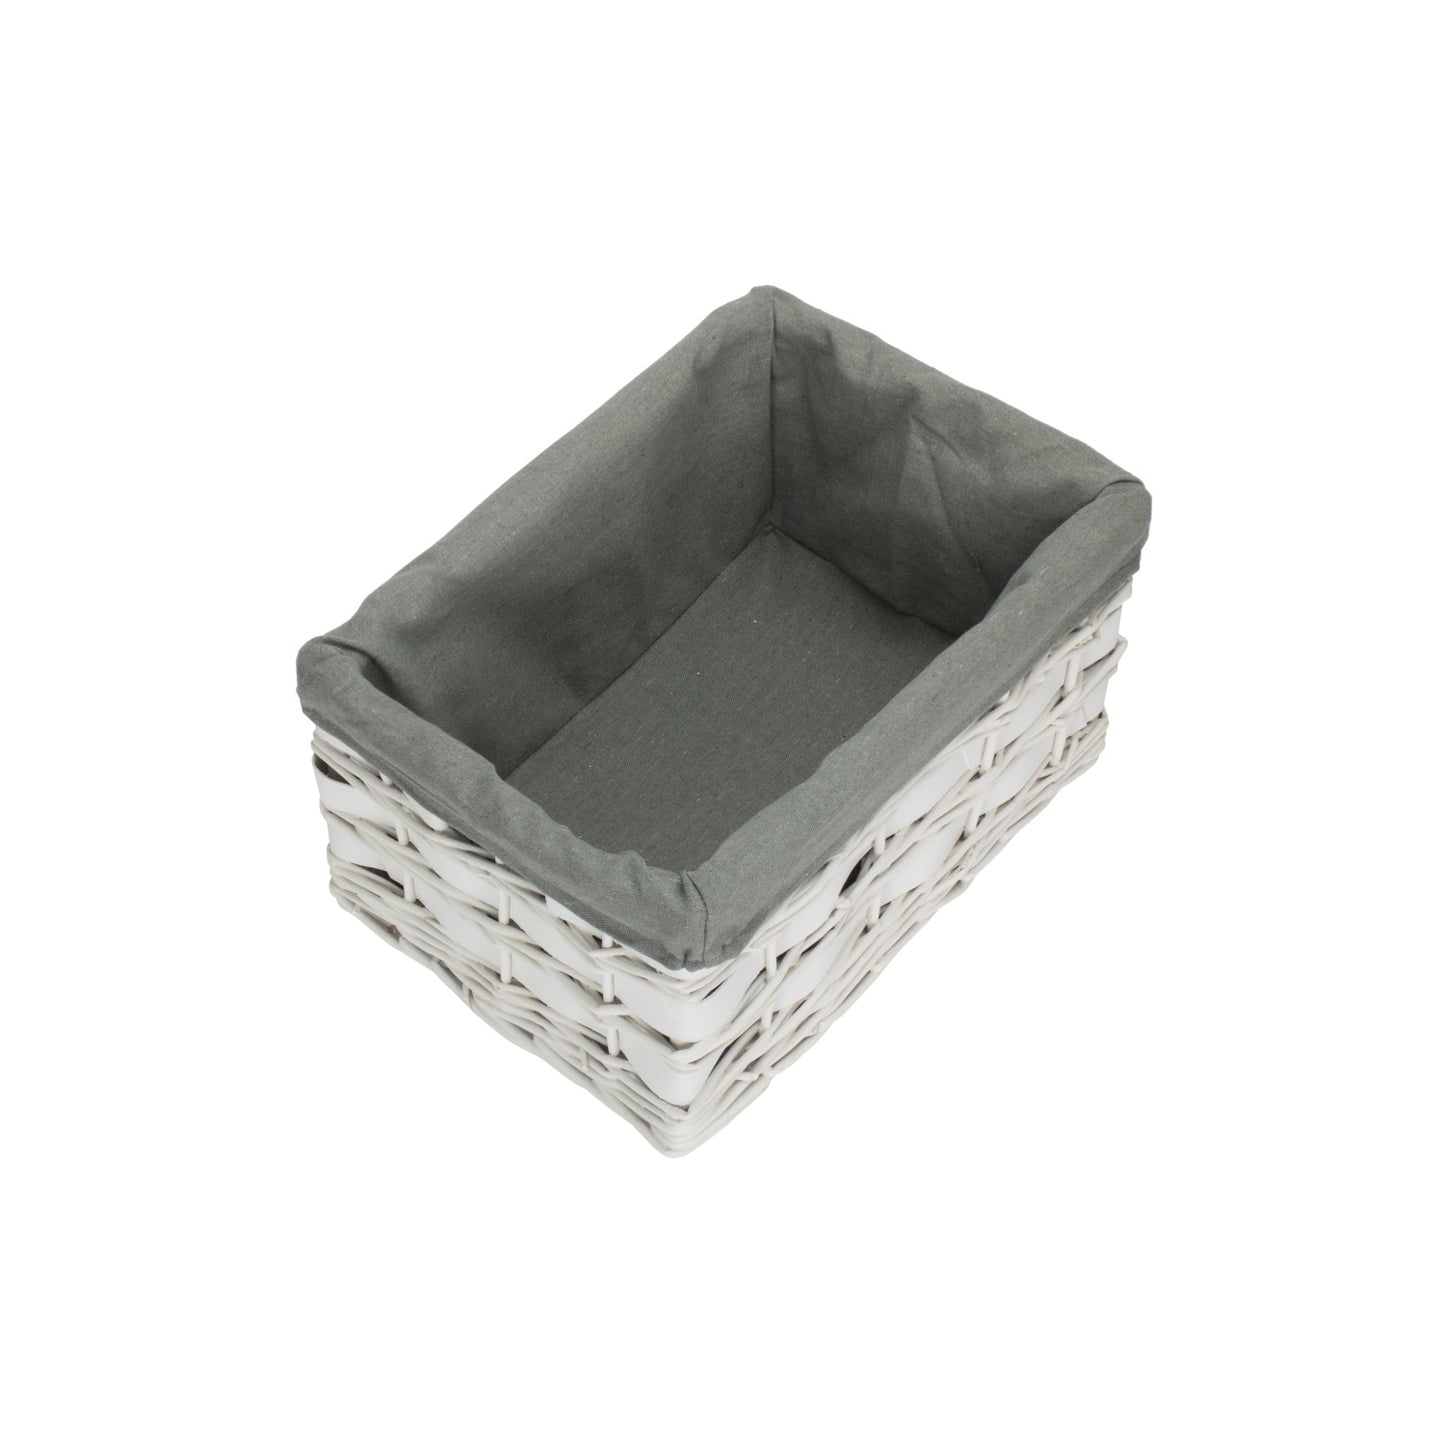 Medium White Scandi Storage Basket With Grey Sage Lining